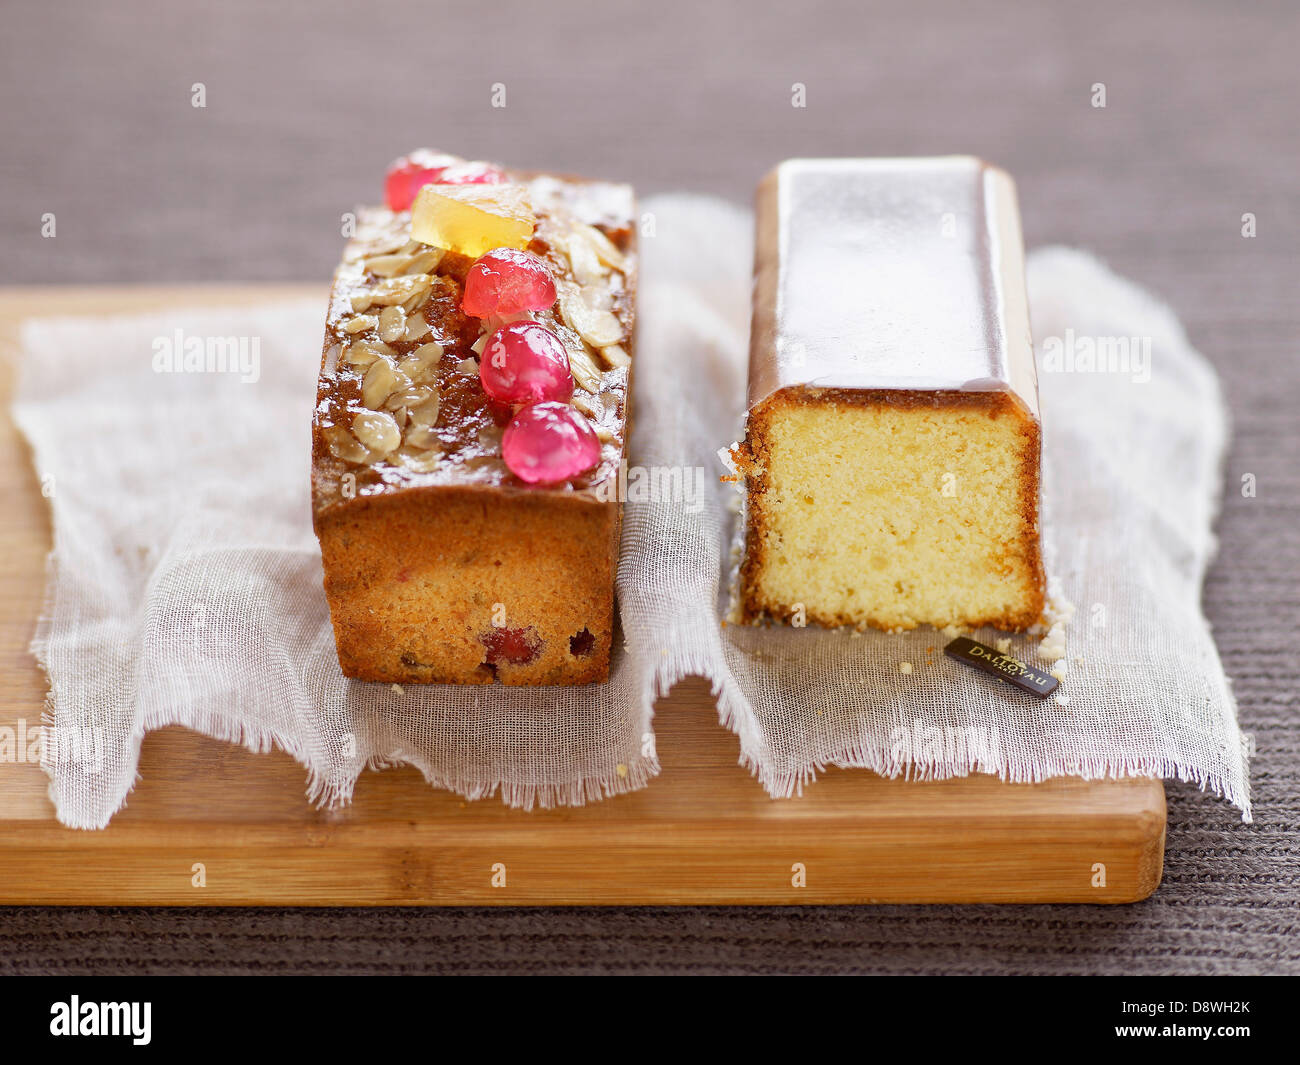 Un gâteau aux fruits et gâteau au citron Banque D'Images